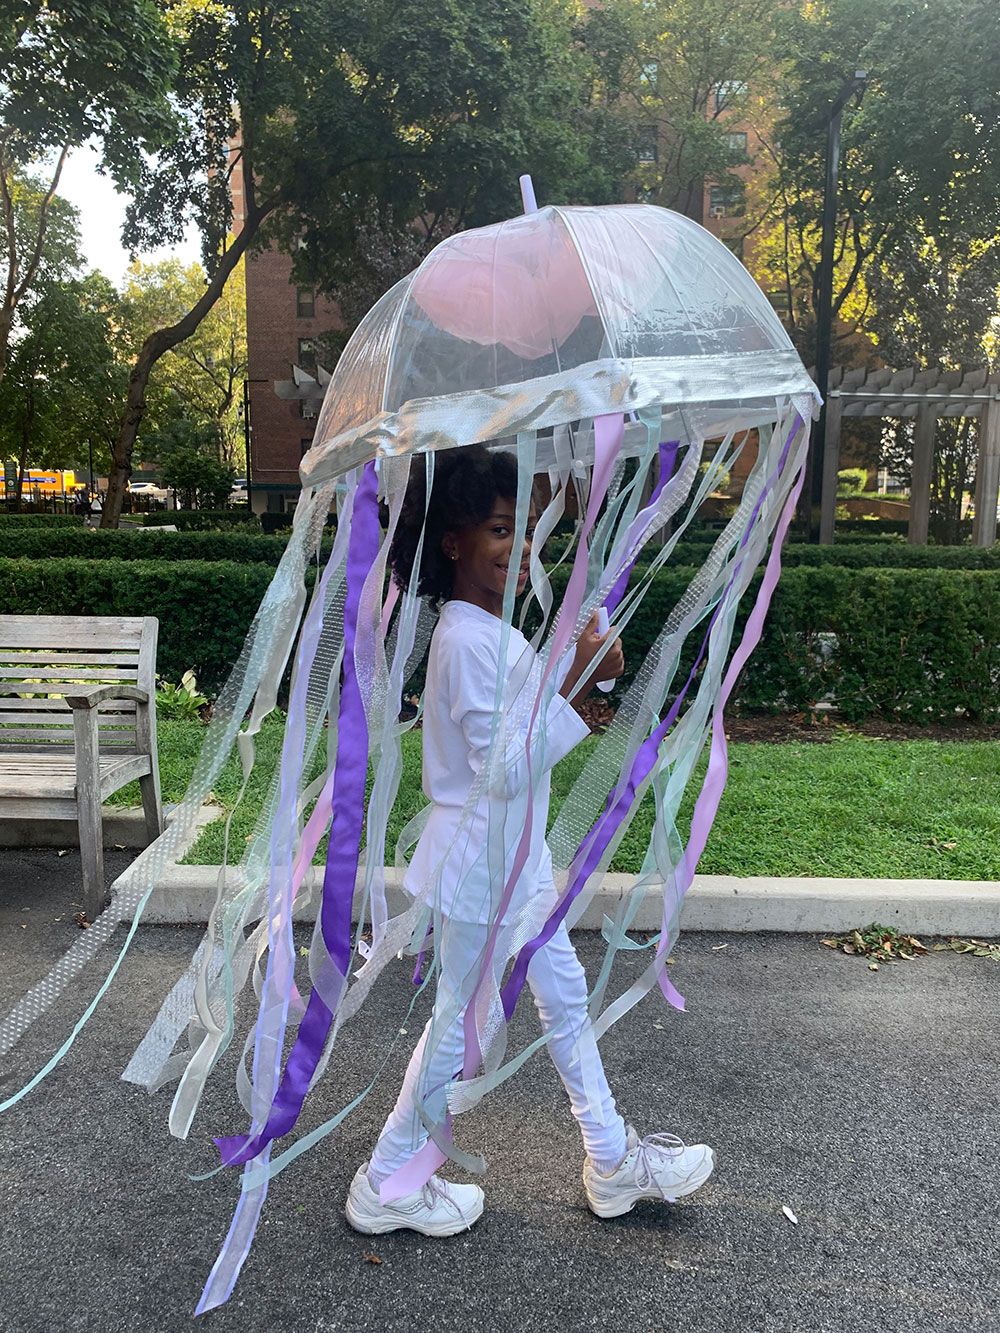 Best DIY Jellyfish Costume - Homemade Jellyfish Halloween Costume